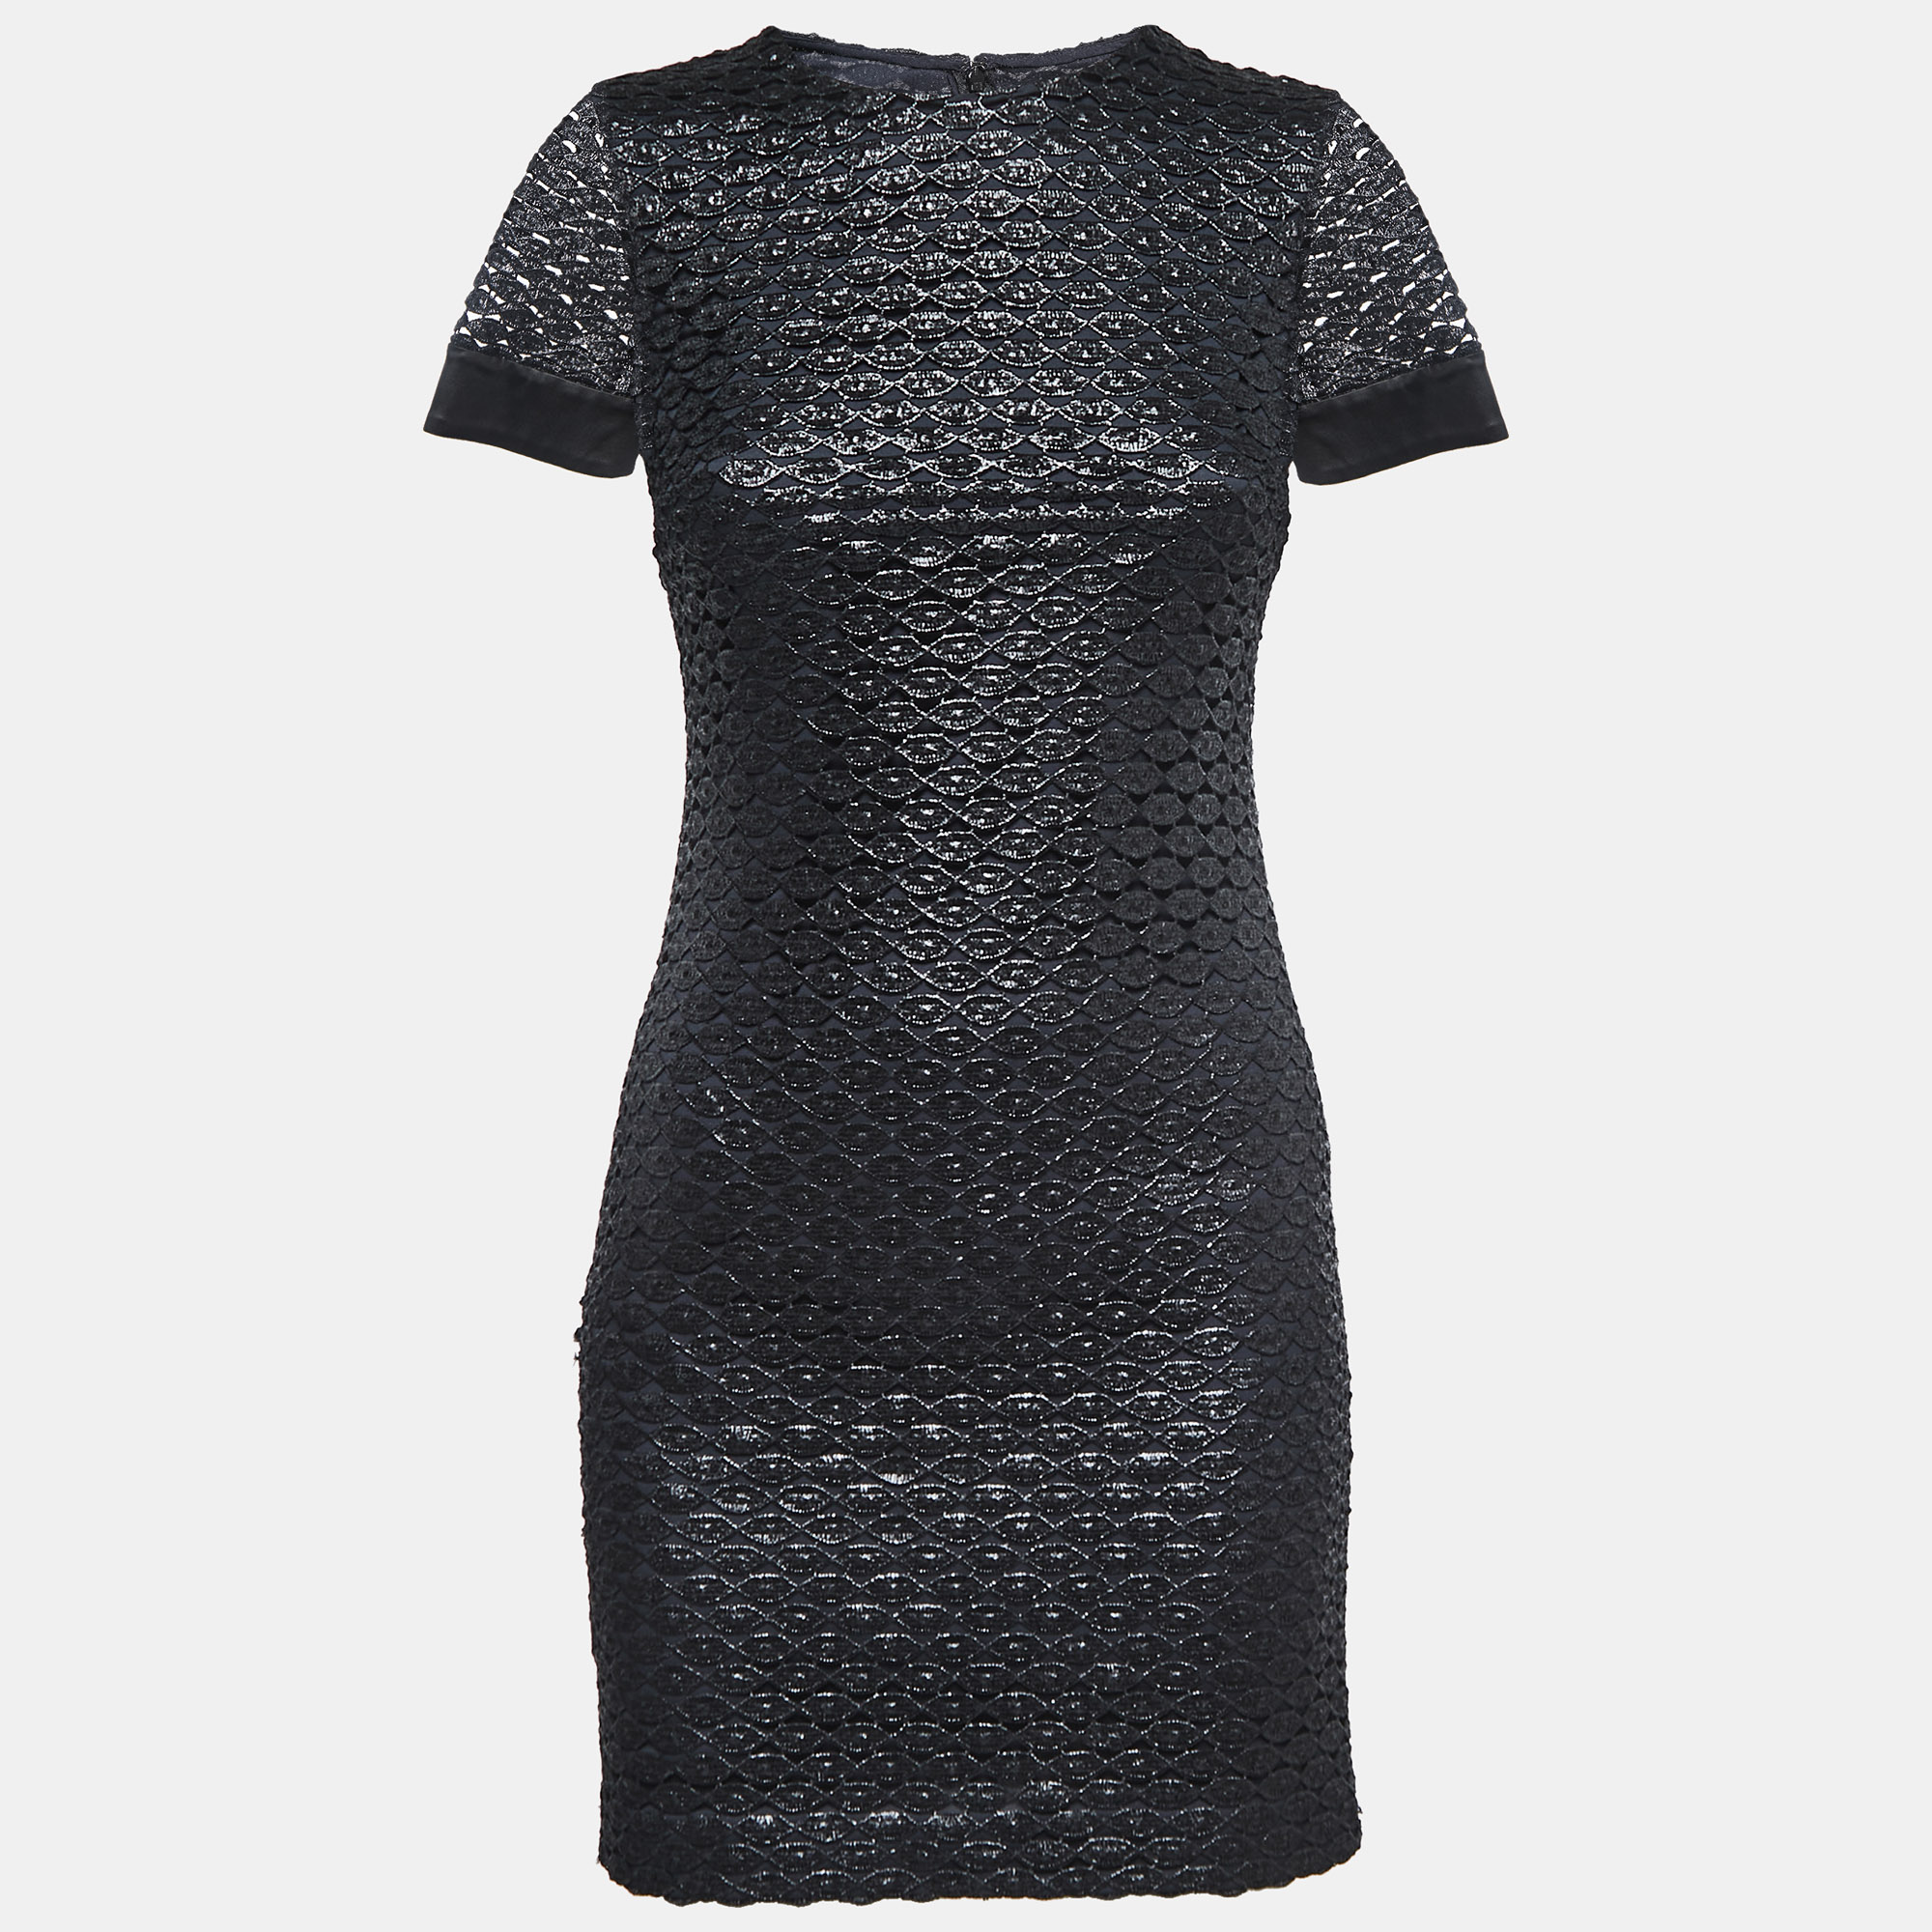 Diane von furstenberg metallic black lace new cindy dress xs